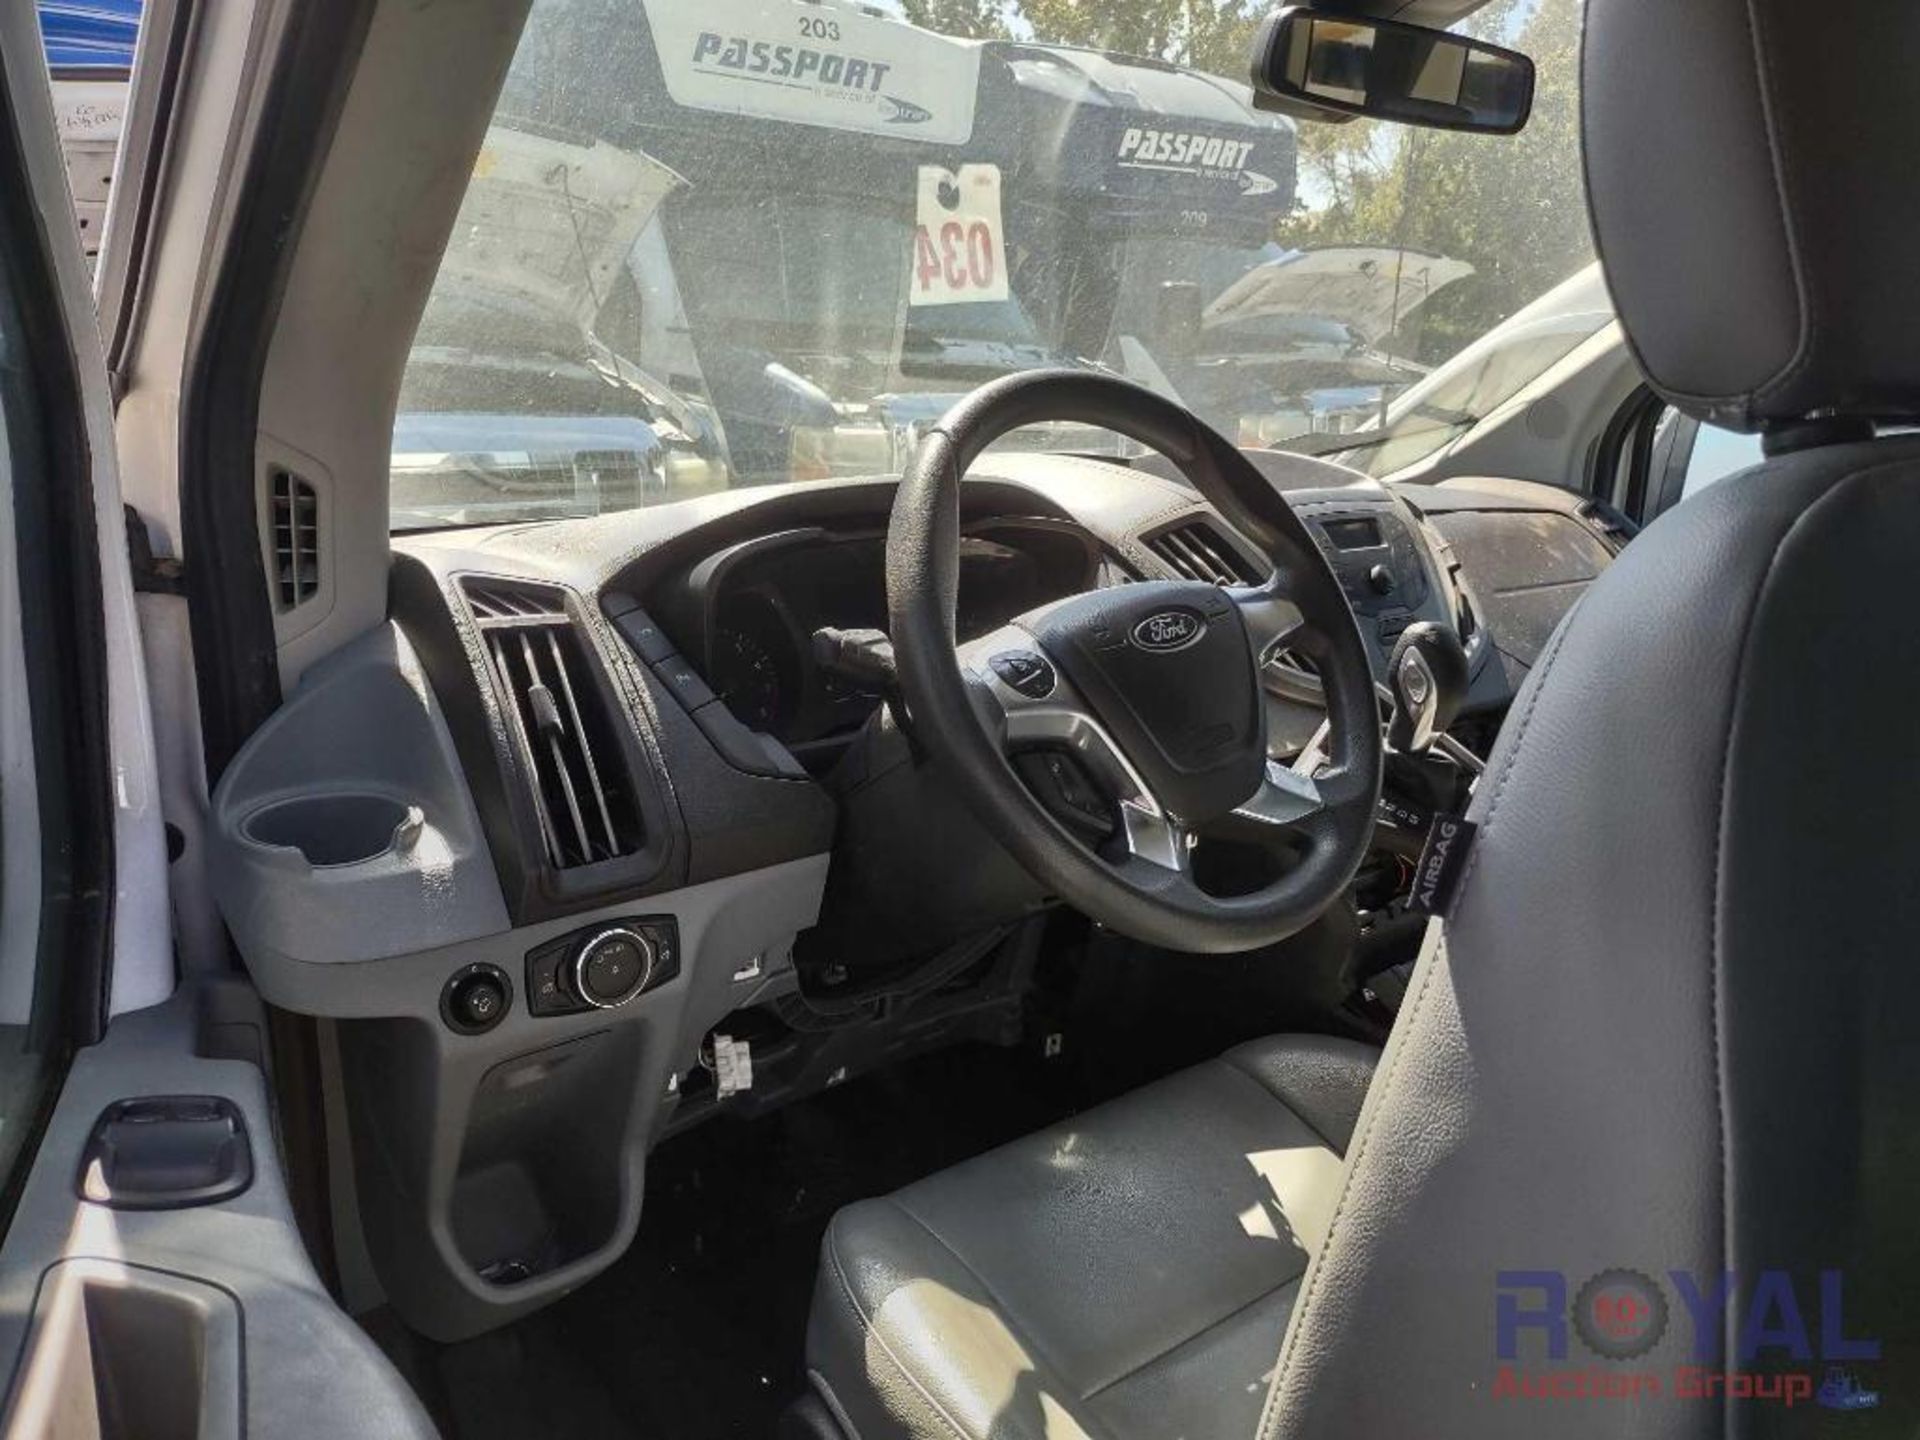 2015 Ford Transit 350 Passenger Van - Image 13 of 32